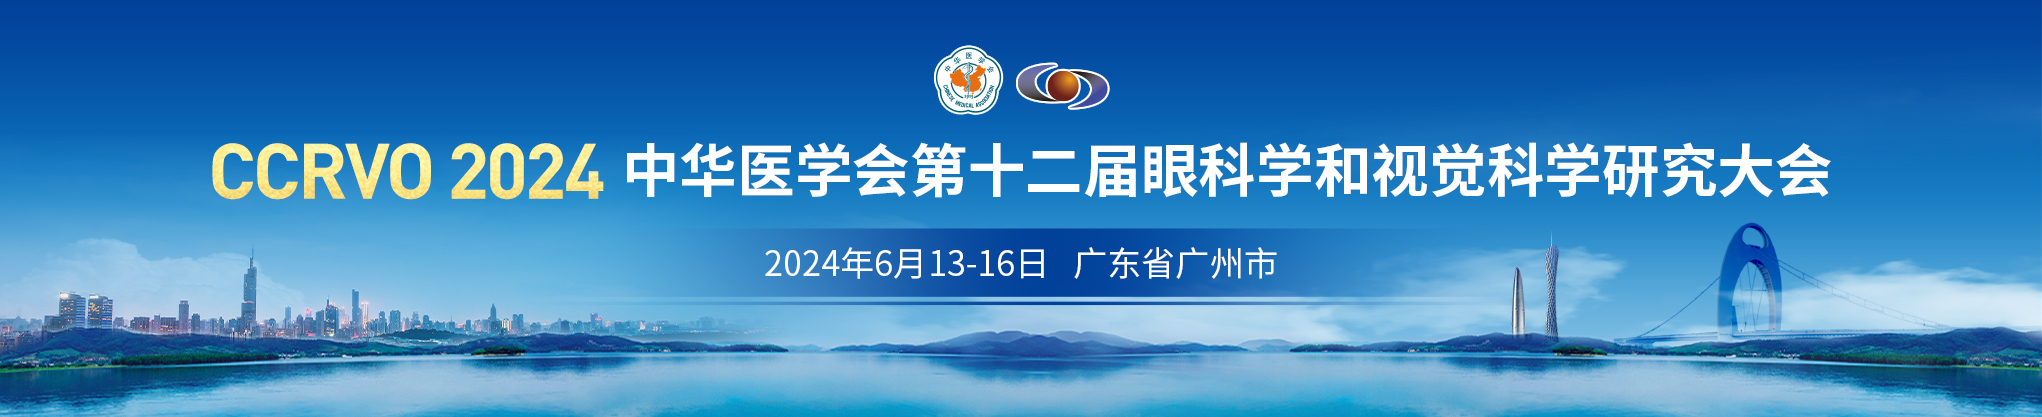 中华医学会第十二届眼科学和视觉科学研究大会 (CCRVO2024)